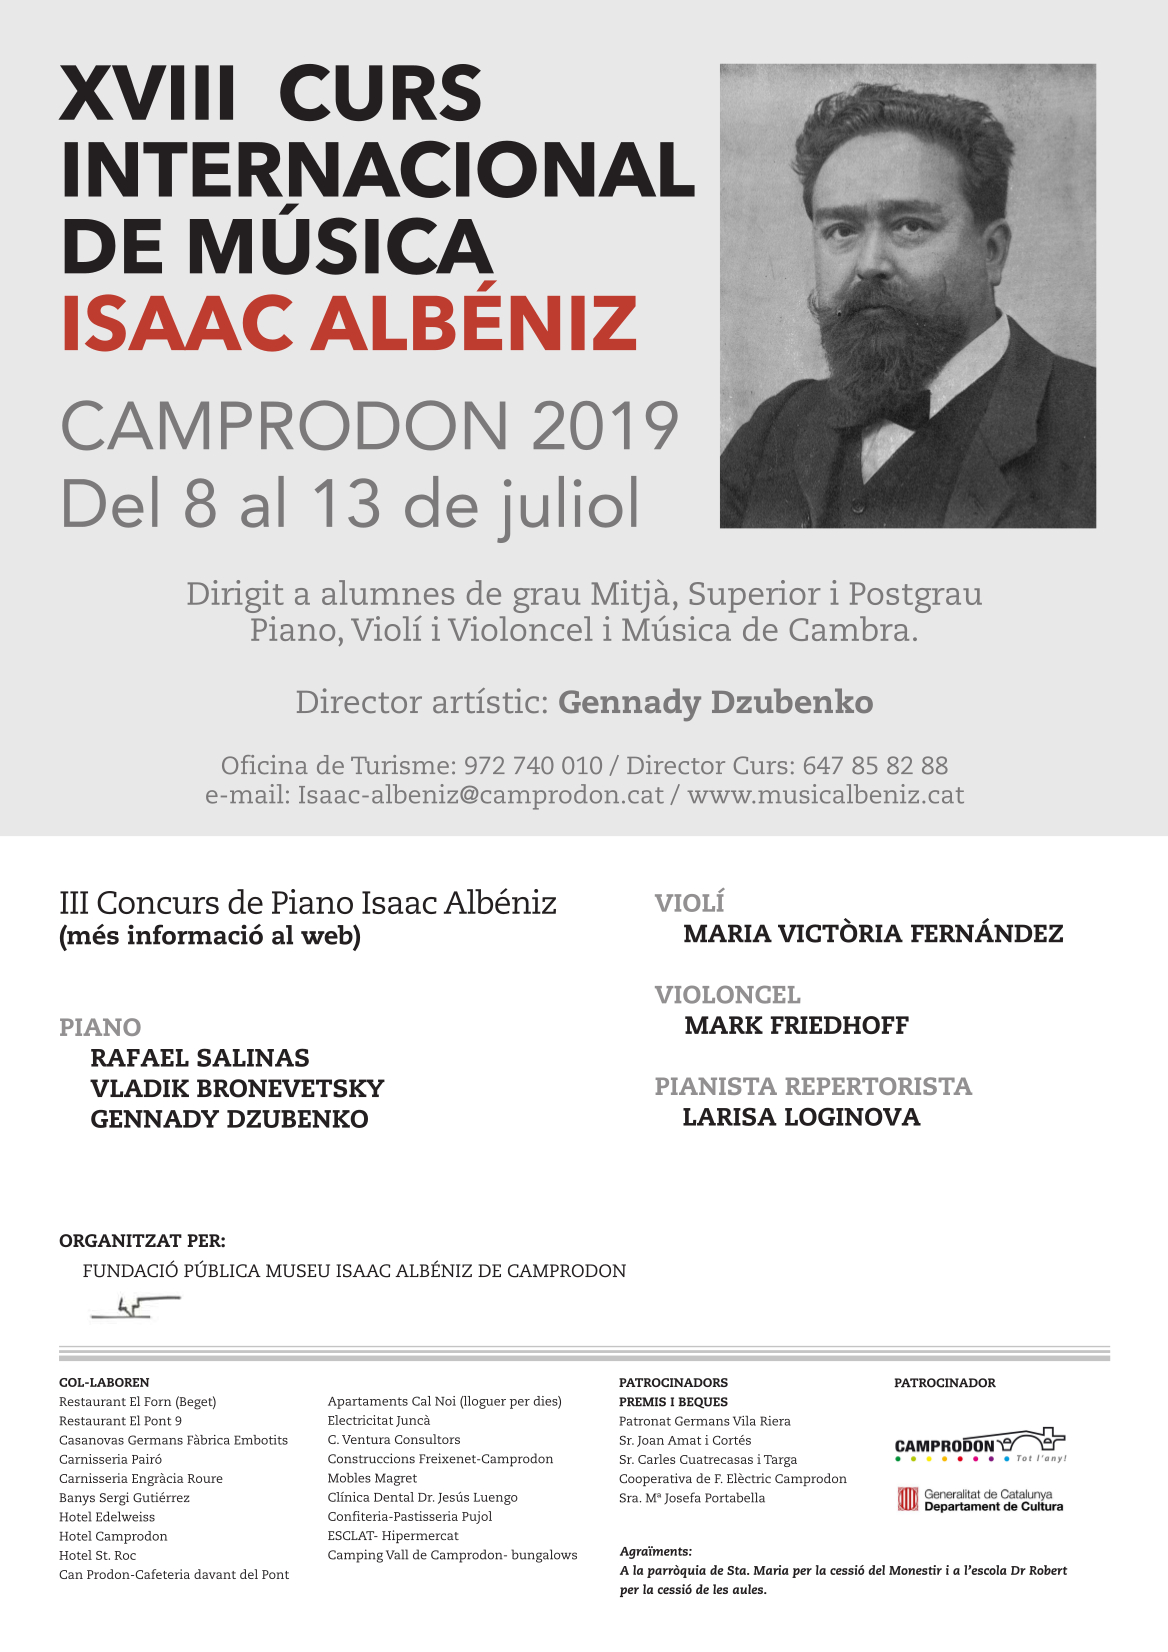 El CURS INTERNACIONAL DE MÚSICA ISAAC ALBÉNIZ DE CAMPRODON 2019